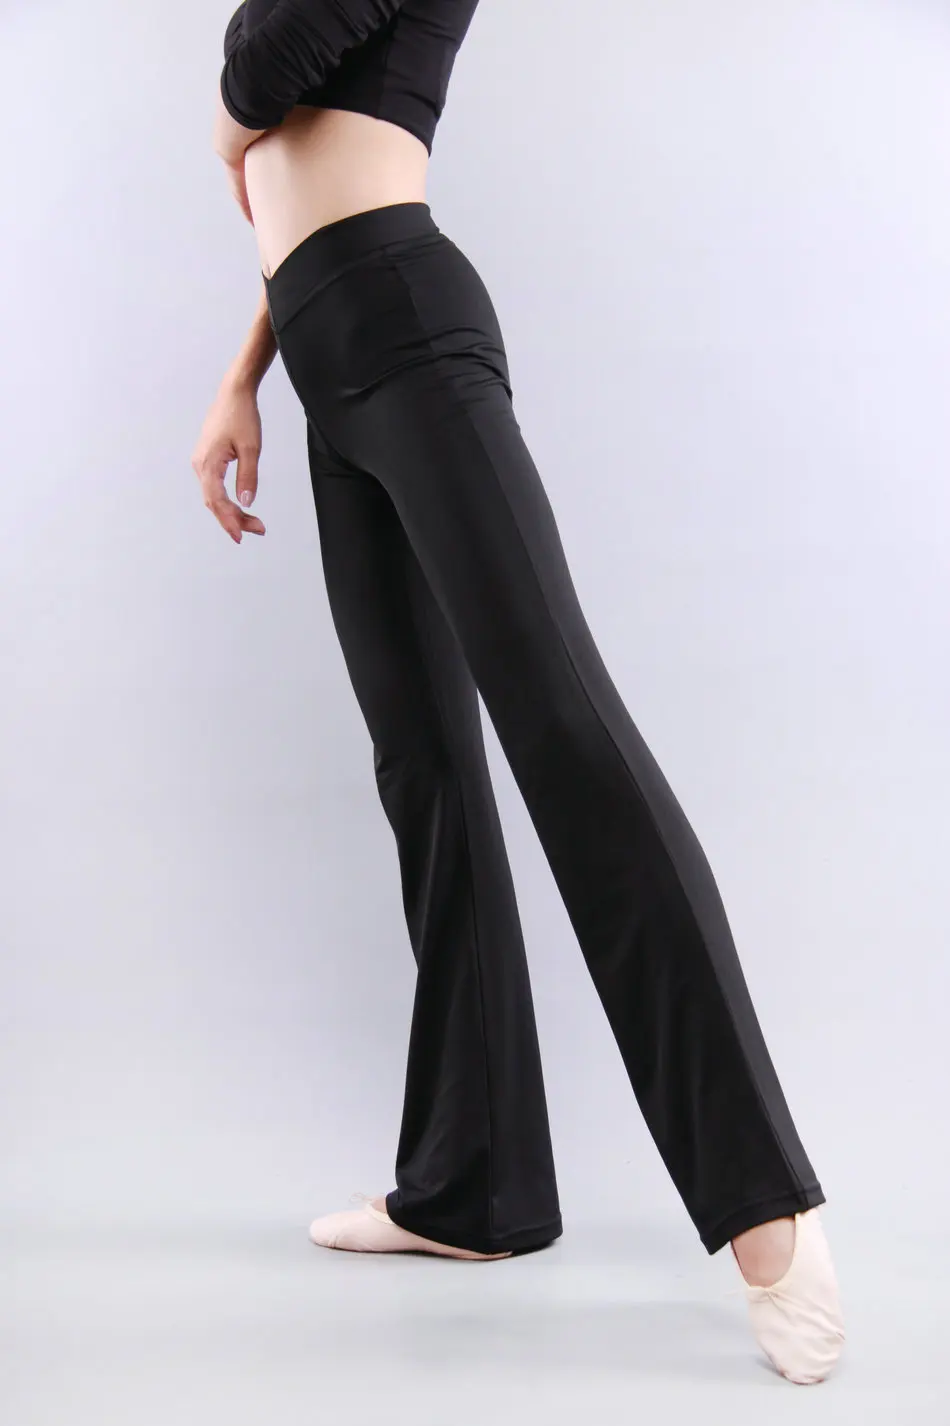 Женские гладкие длинные штаны для танцев из мягкого спандекса, танцевальная одежда черного цвета для весны и лета, Размеры S 2XL